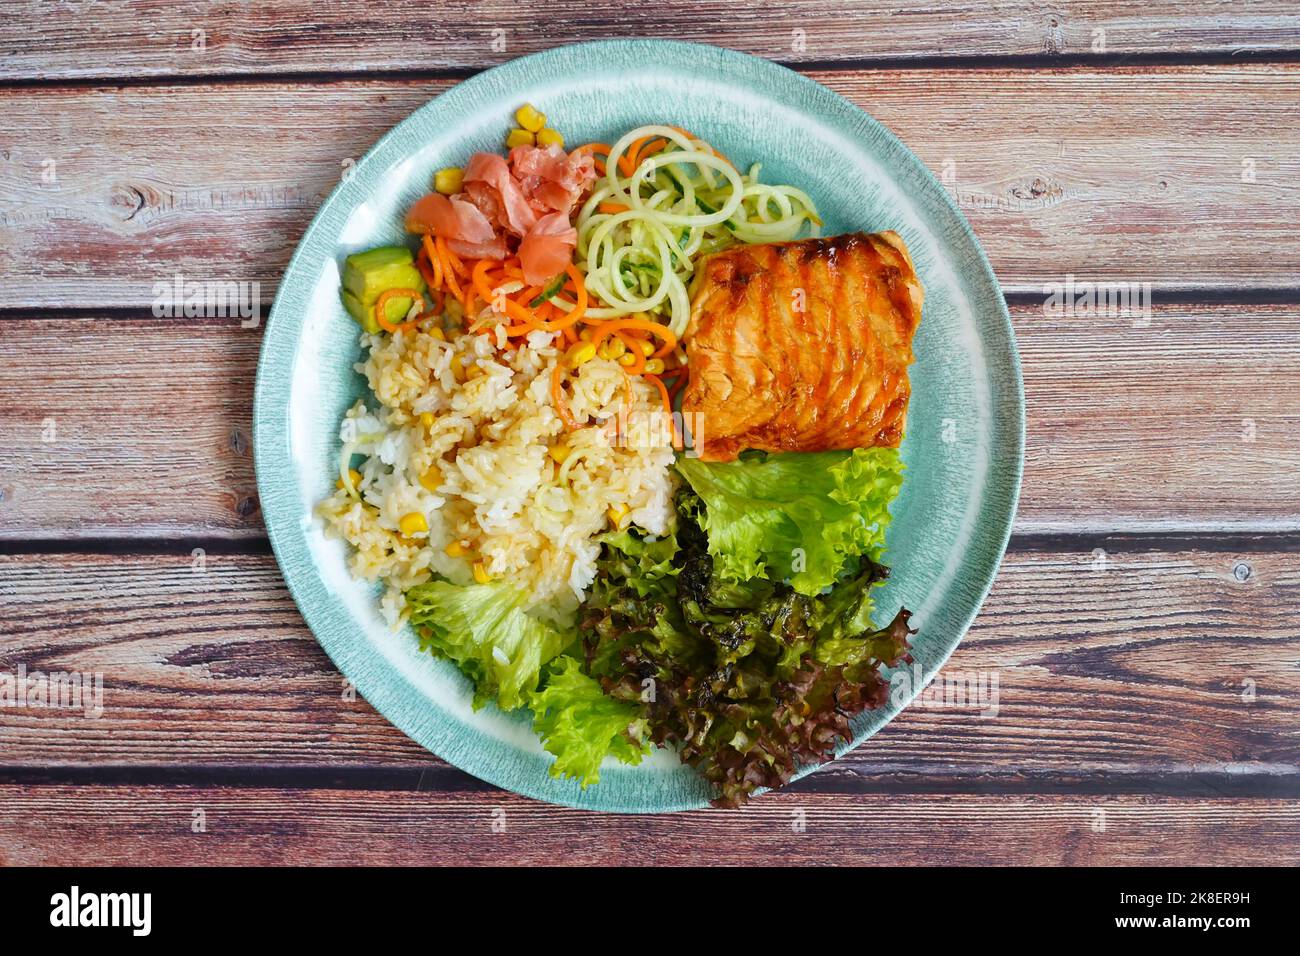 Alimentation équilibrée maison : saumon grillé, riz, légumes et salade. Banque D'Images